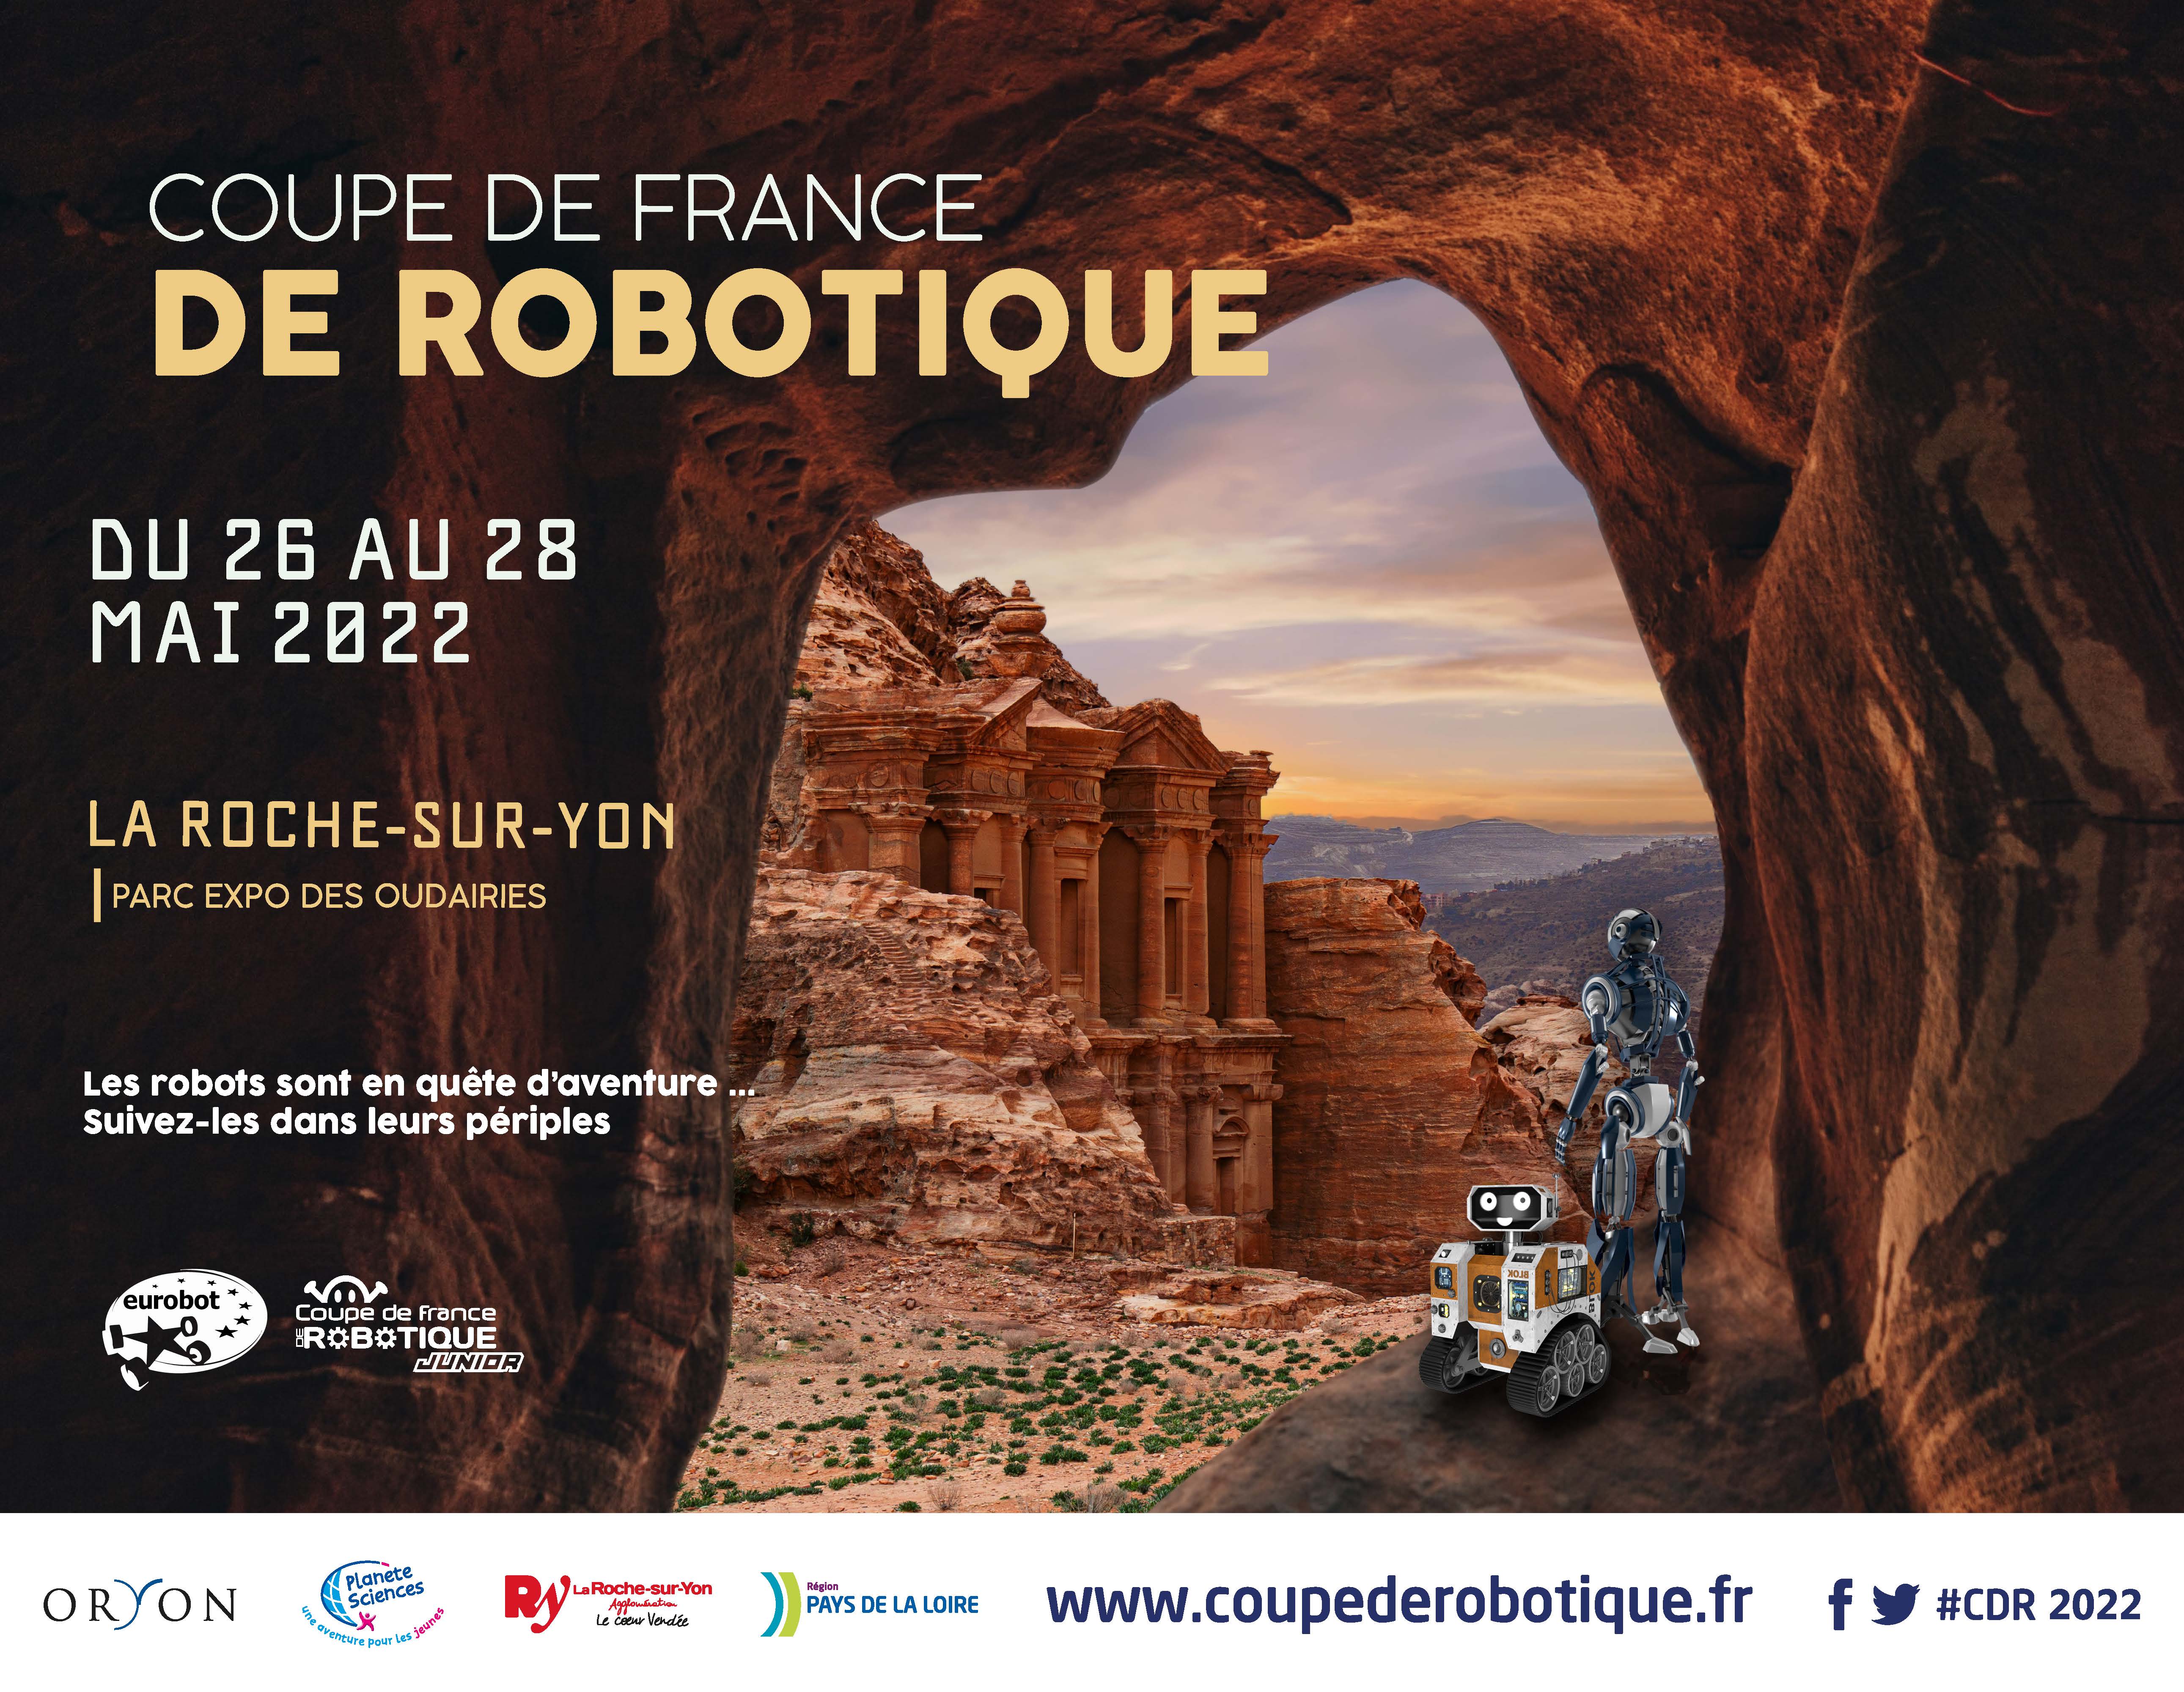 image credit Coupe de France de Robotique